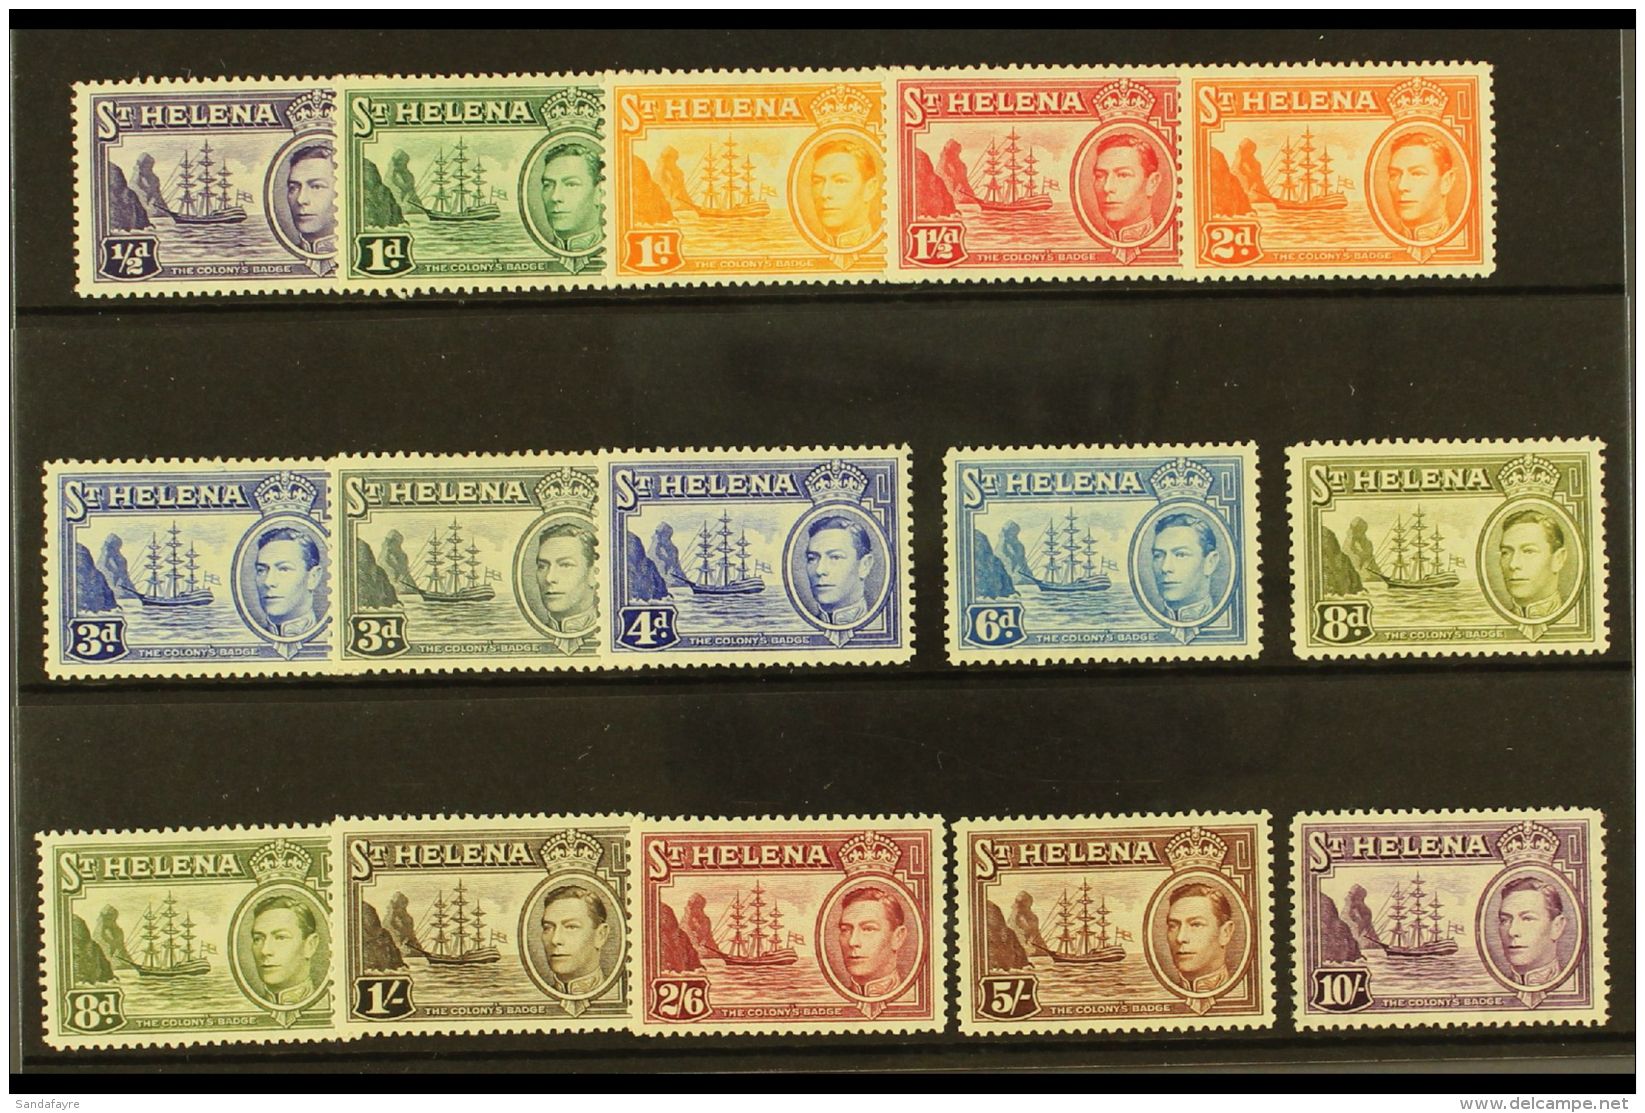 1938-44 Pictorial Definitive Set Plus 8d Listed Shade, SG 131/40, Fine Mint (15 Stamps) For More Images, Please... - Sainte-Hélène